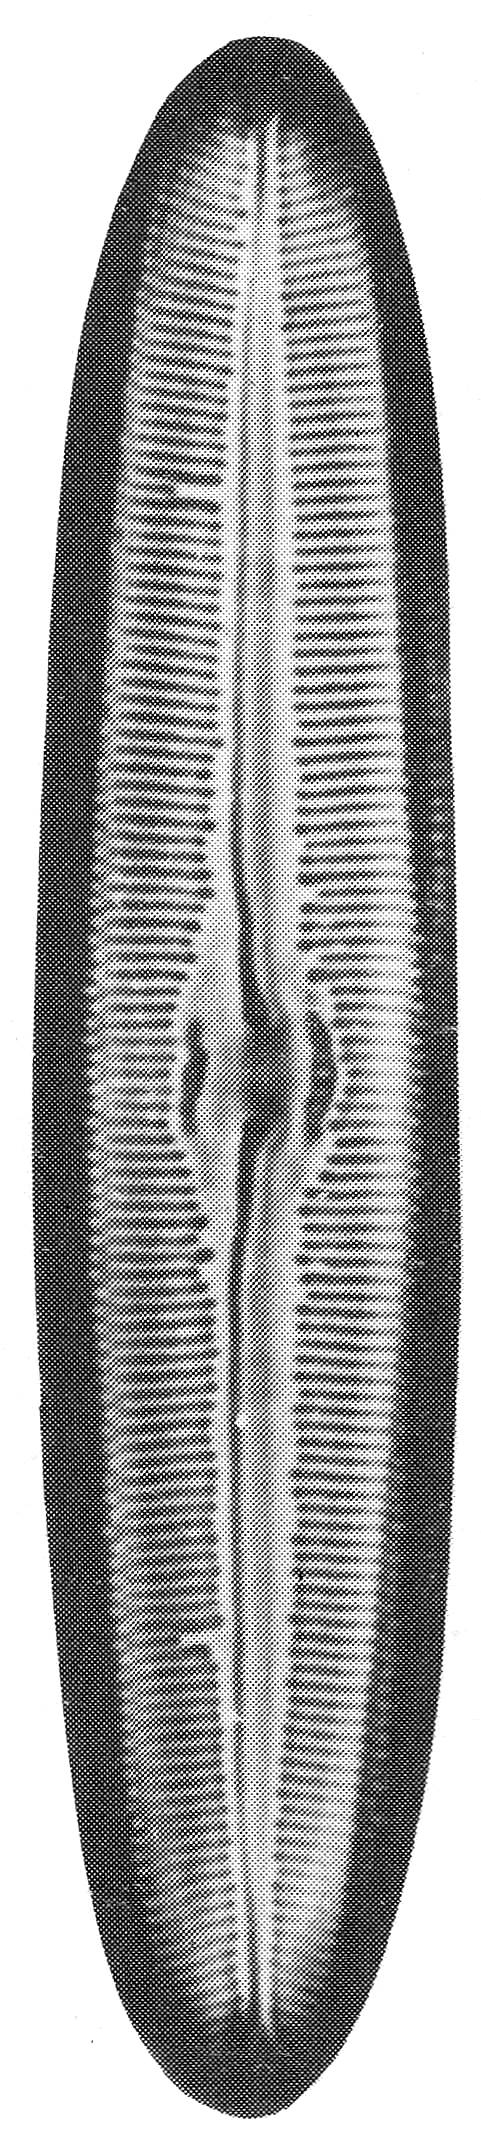 In particolare, Diatoma hyemalis è considerata in pericolo anche nella lista rossa delle diatomee di Germania (Lange-Bertalot, 1996).